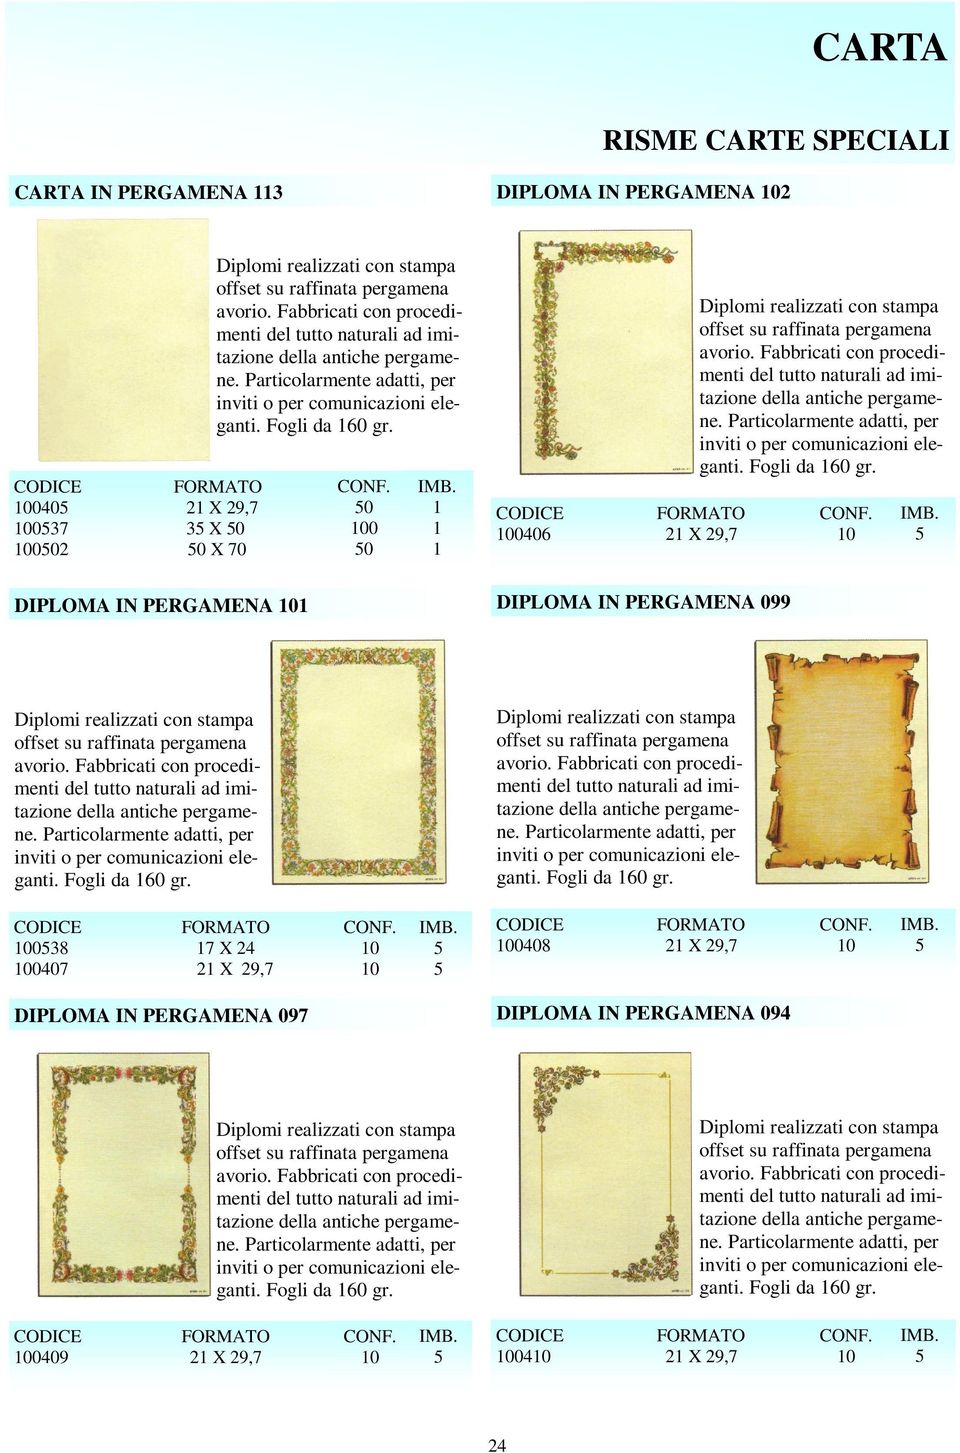 2 X 29, 3 X 0 0 X 0 0 00 0 000 Diplomi realizzati con stampa offset su raffinata pergamena avorio.